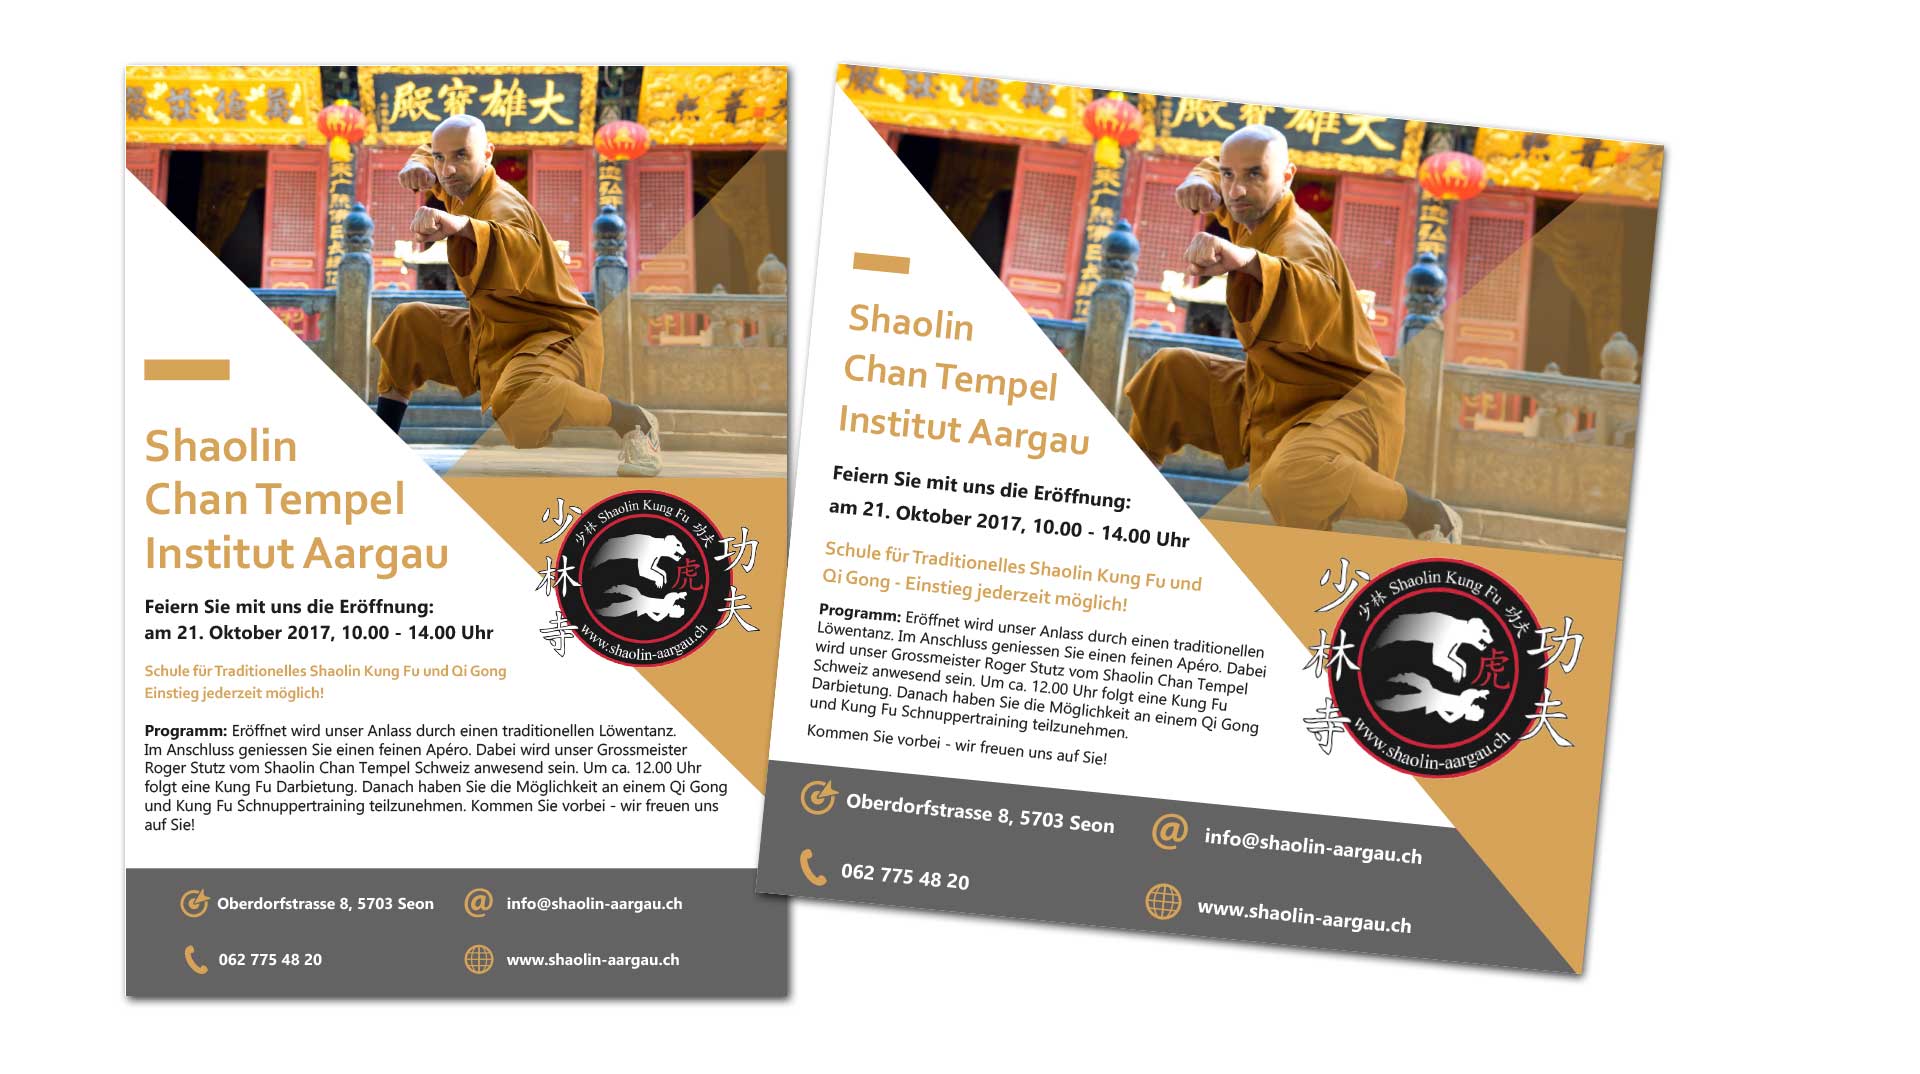 Flyer für die Eröffnung des Shaolin Chan Tempel Institut Aargau